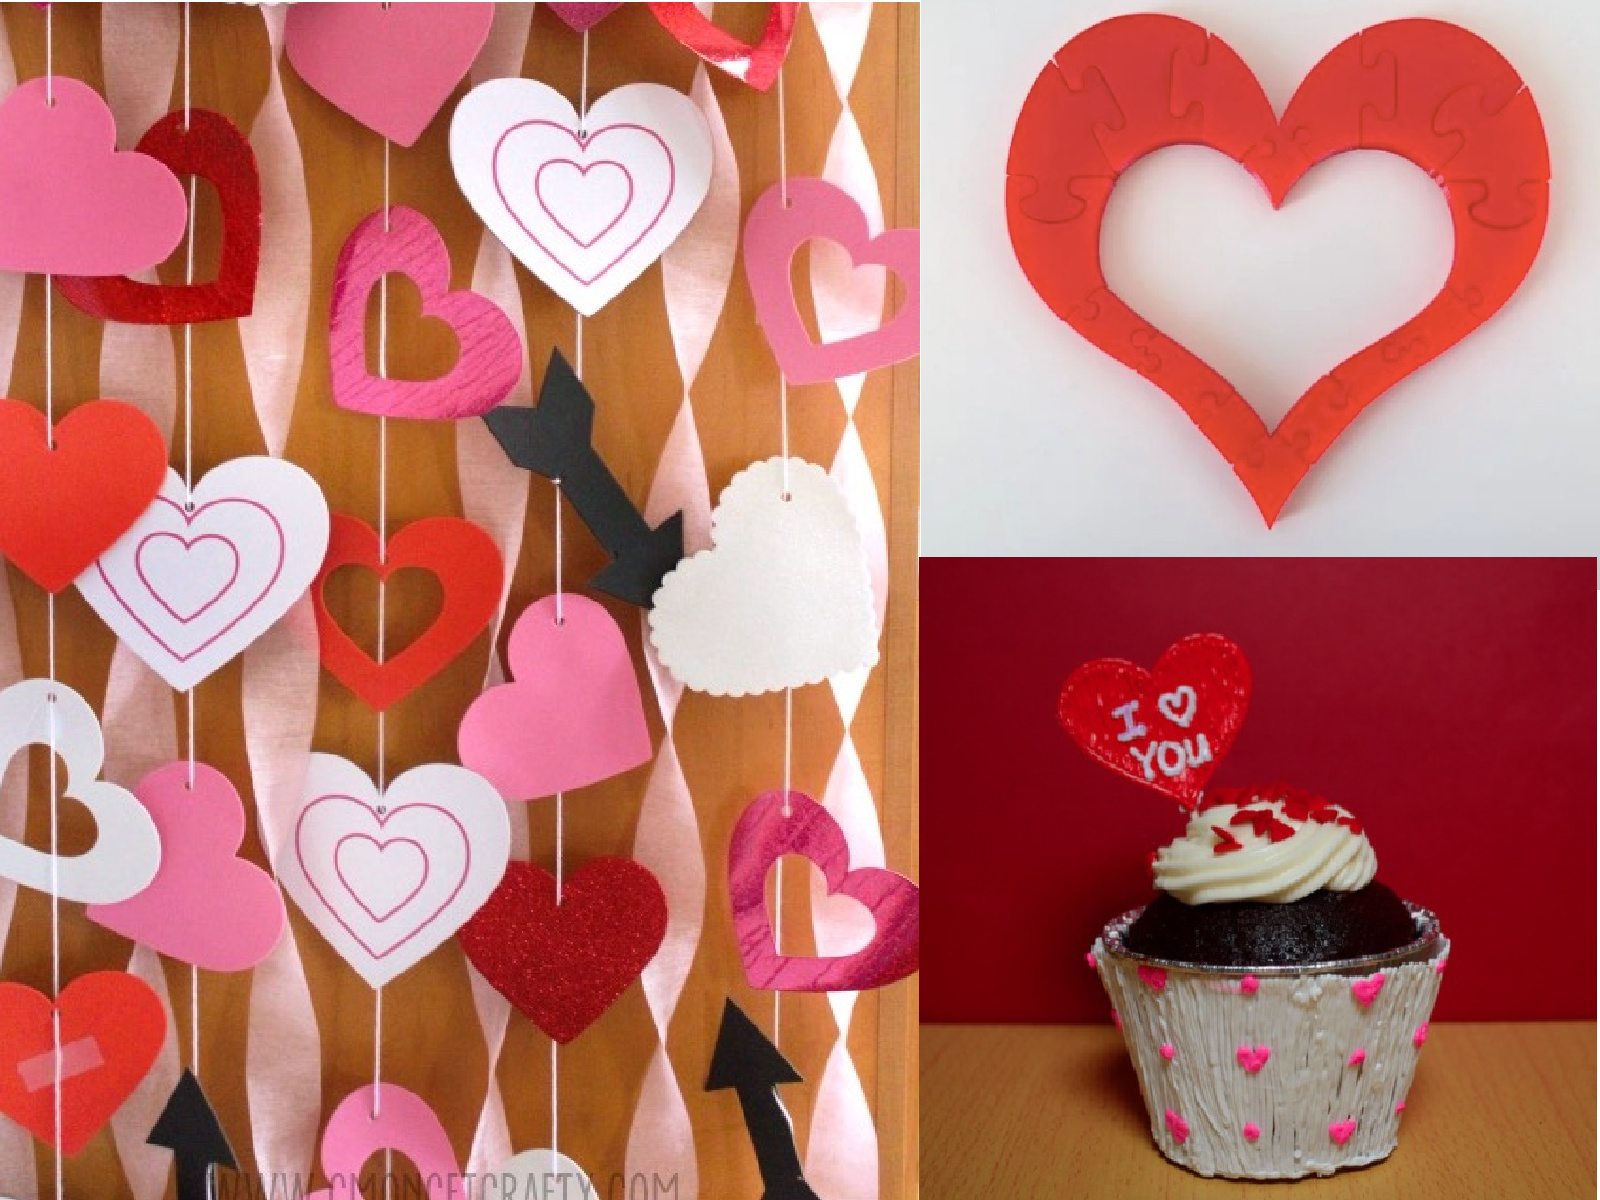 Valentine's Day Heart Caterpillar Craft For Kids